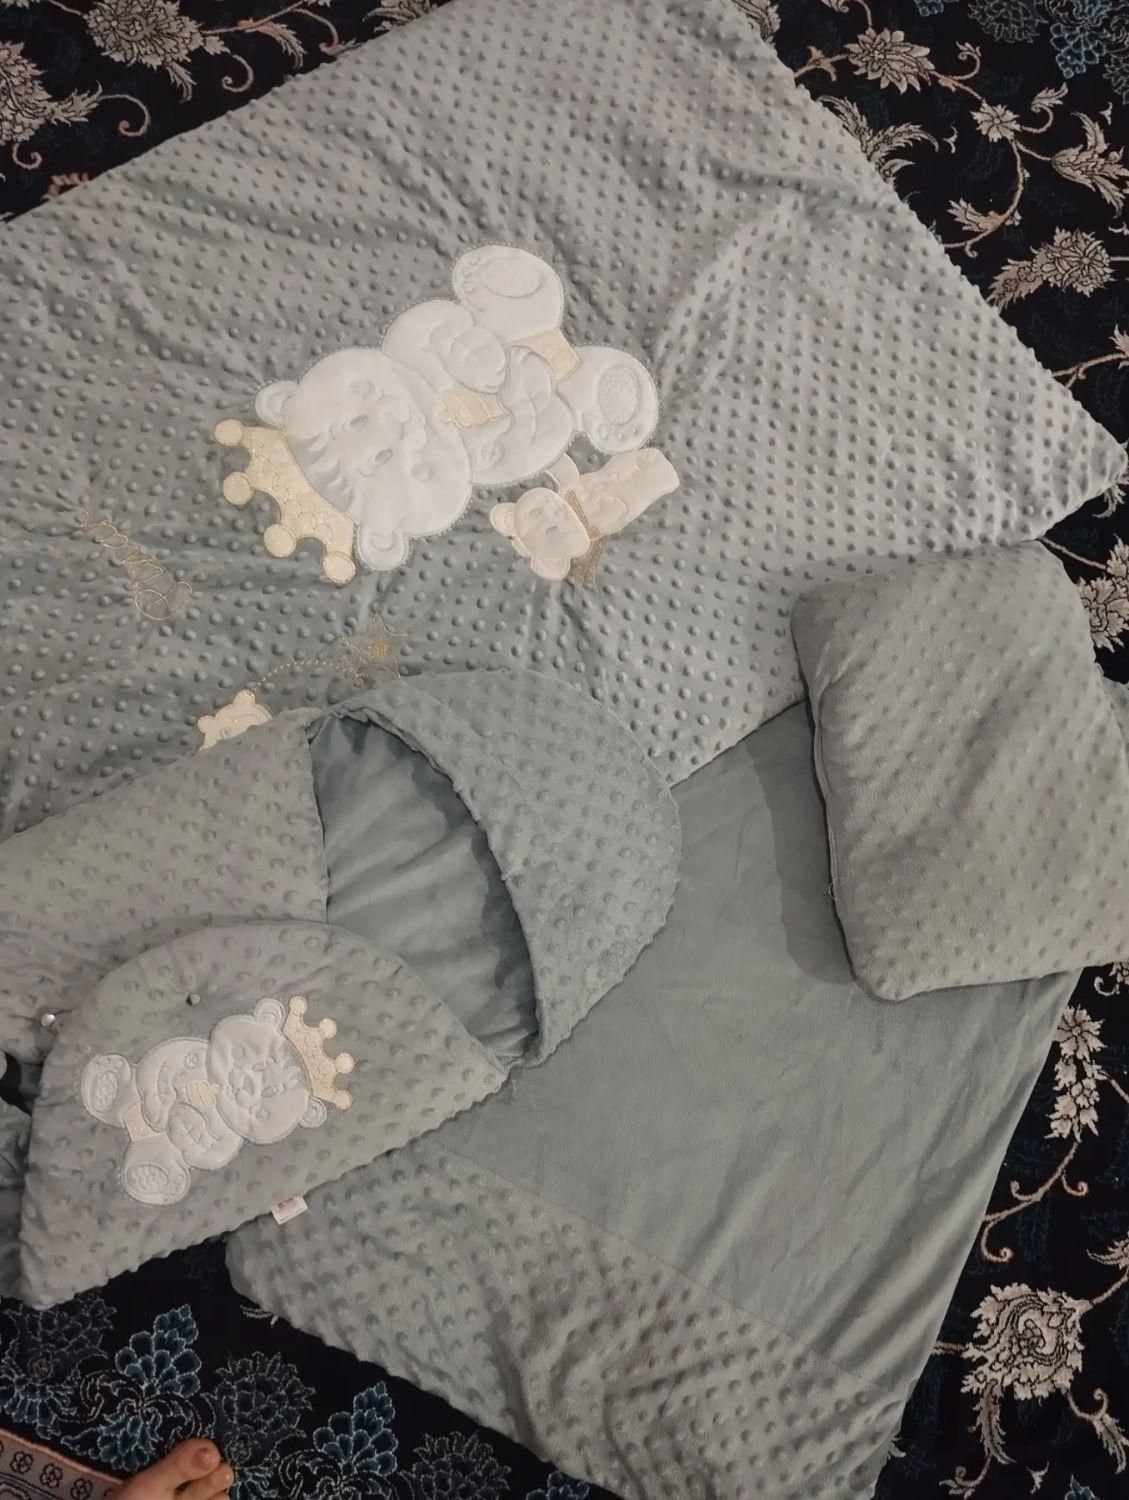 سرویس خواب نوزاد|رختخواب، بالش و پتو|تهران, خاک سفید|دیوار